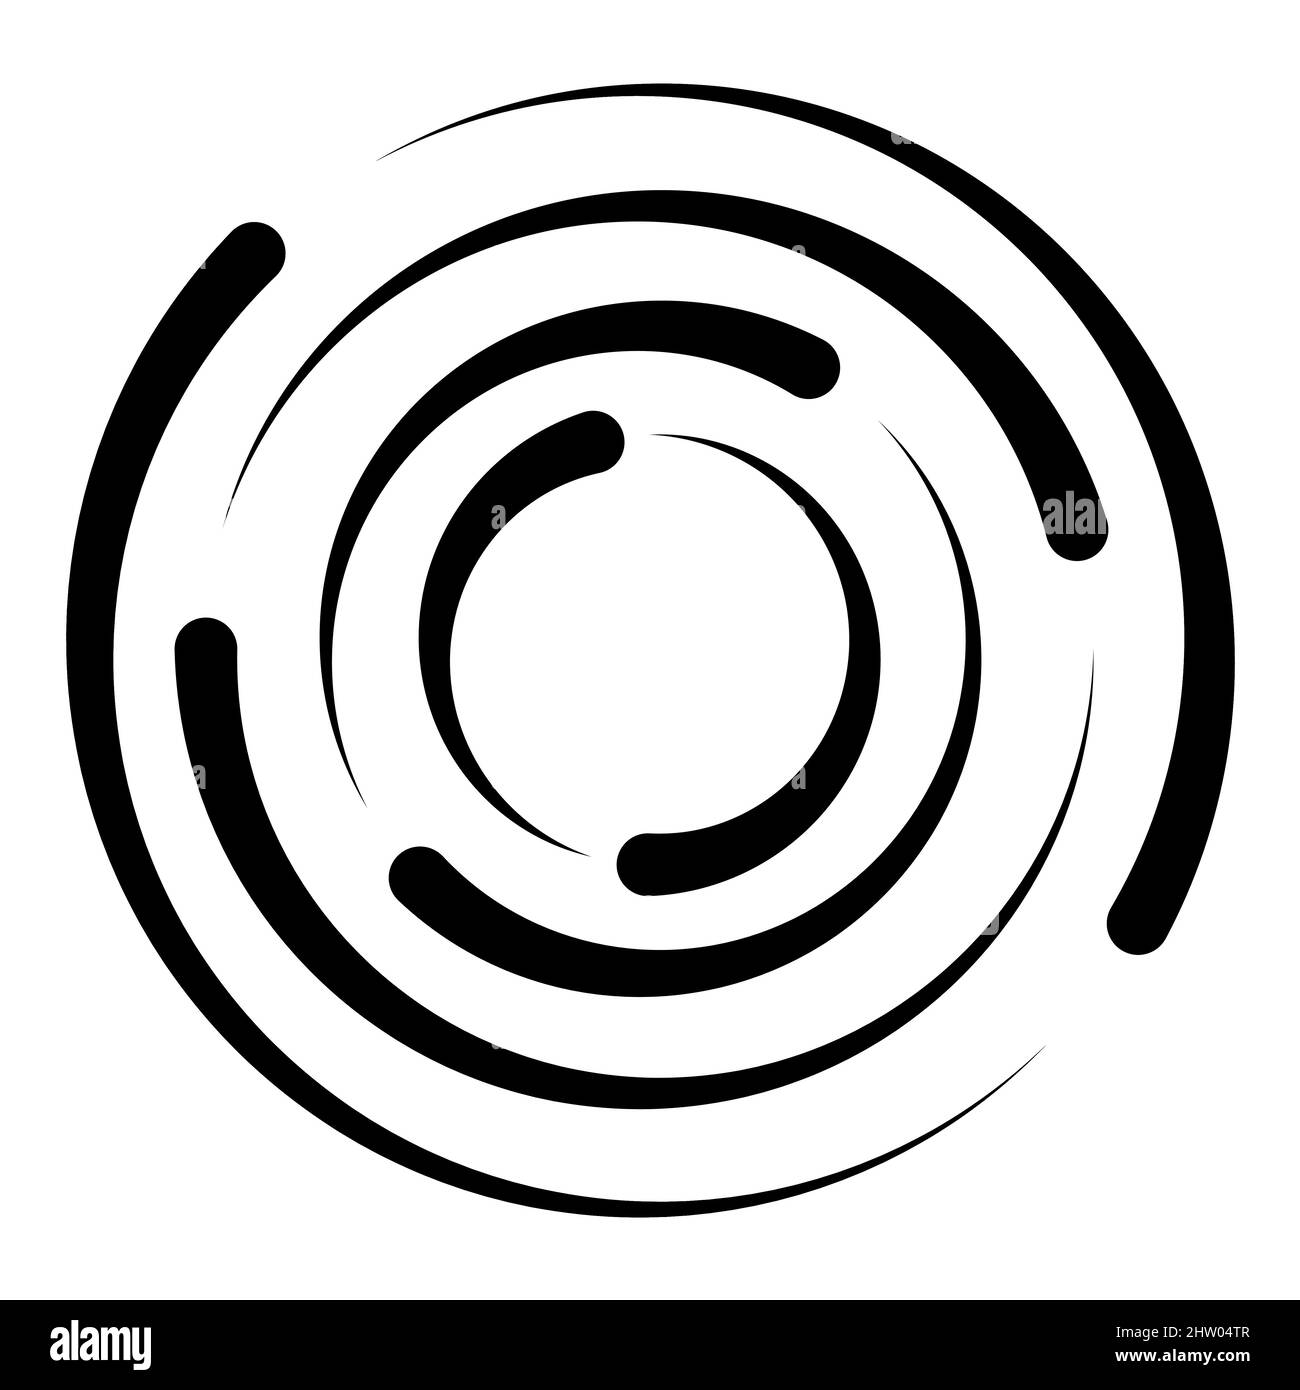 Konzentrischer Kreis, Kreisdrehungsradius, Symbol für Kreisdrehung Stock Vektor